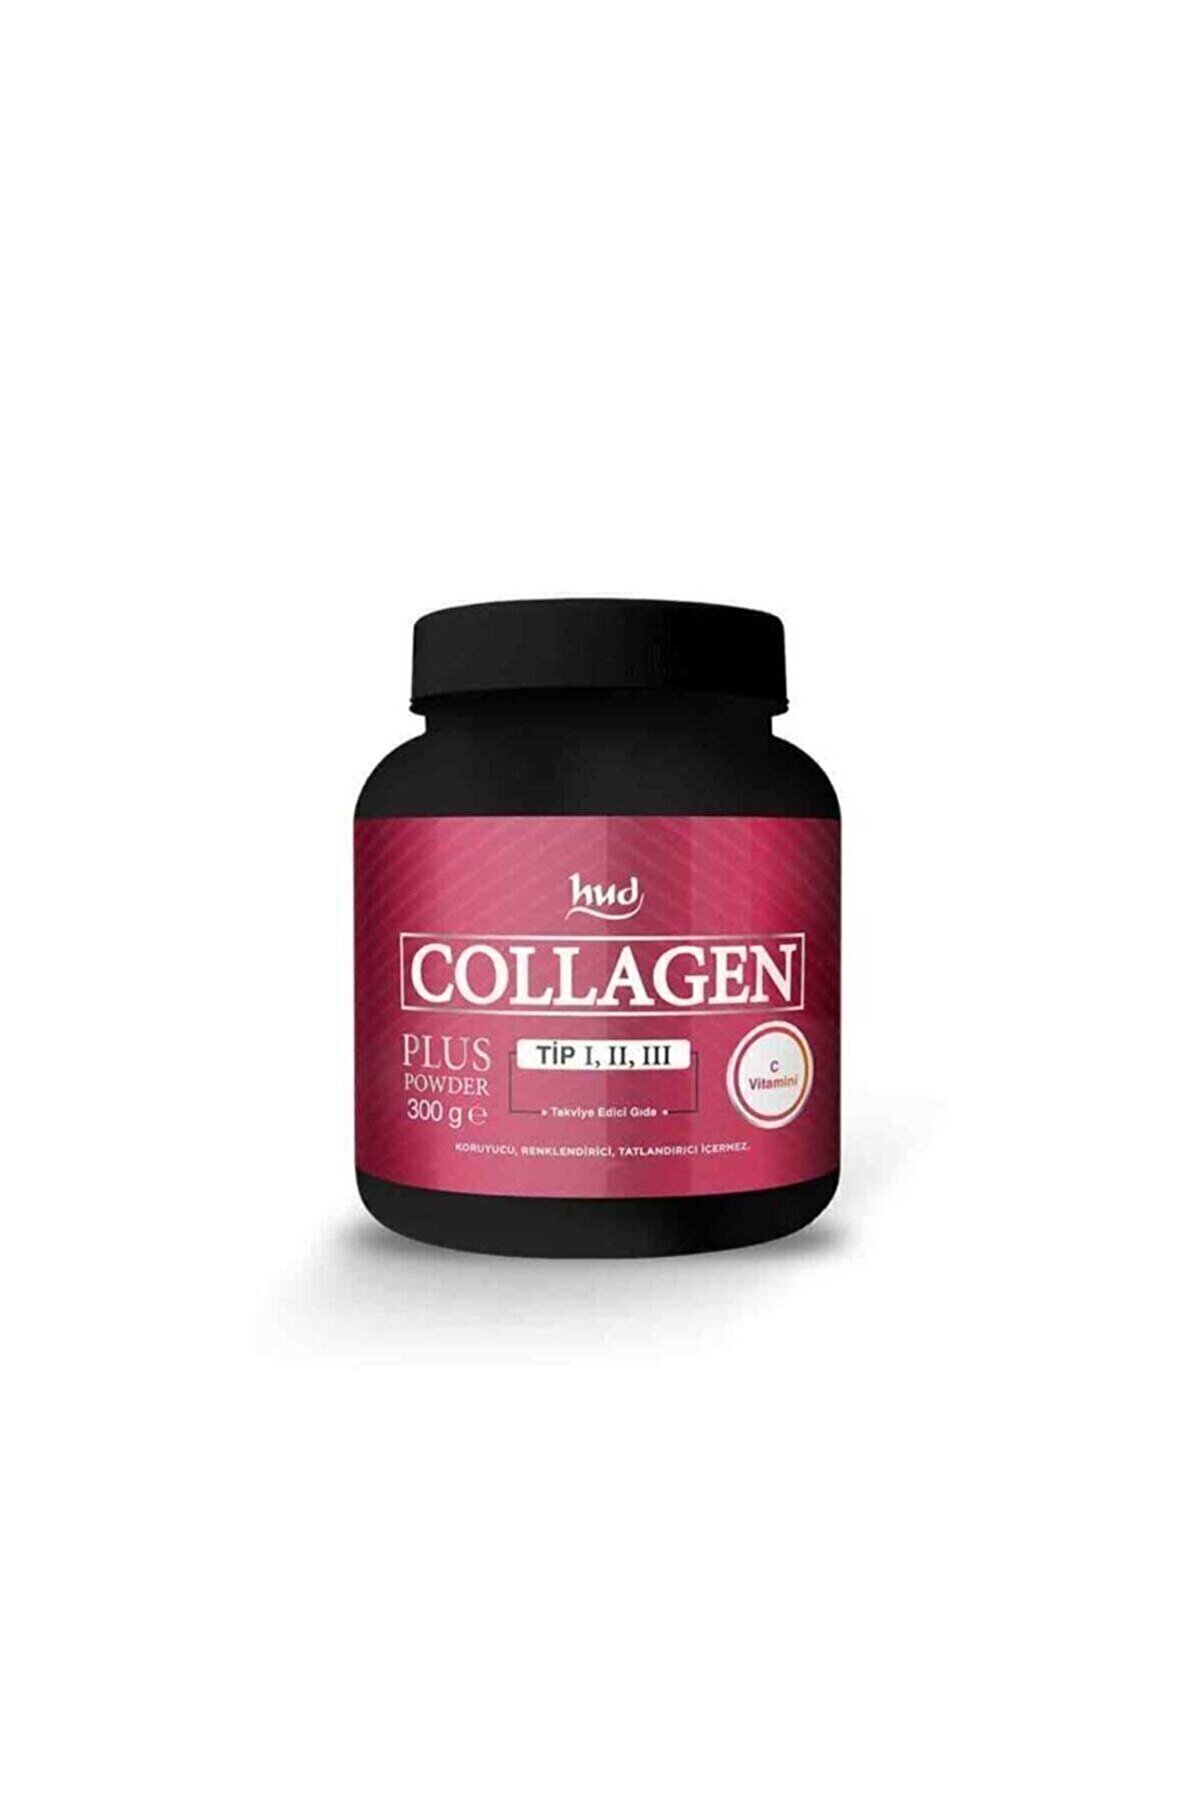 Hud Collagen Plus Powder-tip 1,2,3 C Vitamini Içeren Kolajen